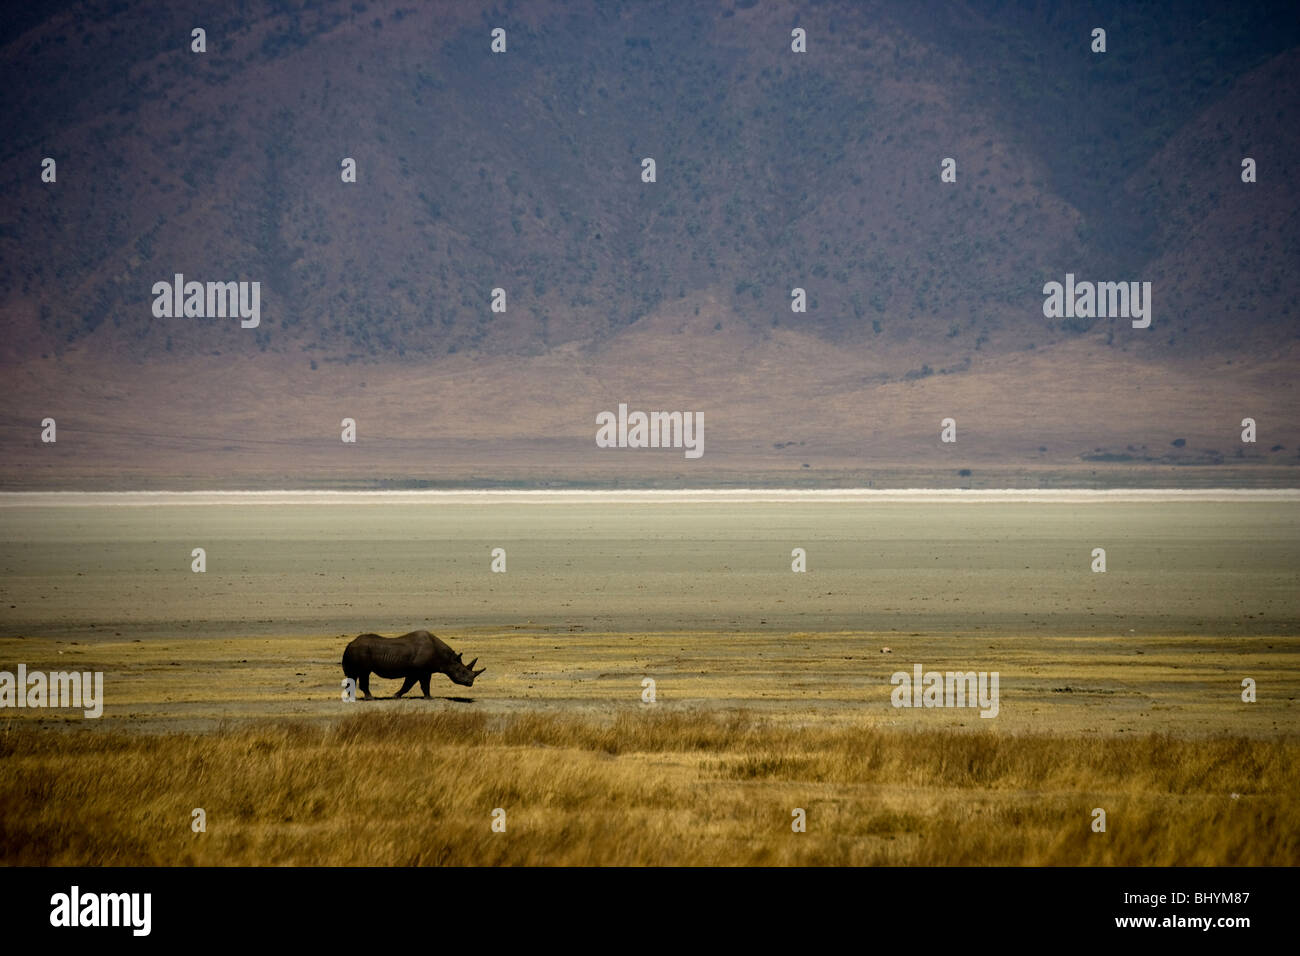 Black Rhino, Ngorongoro Crater, Tanzania, East Africa Stock Photo